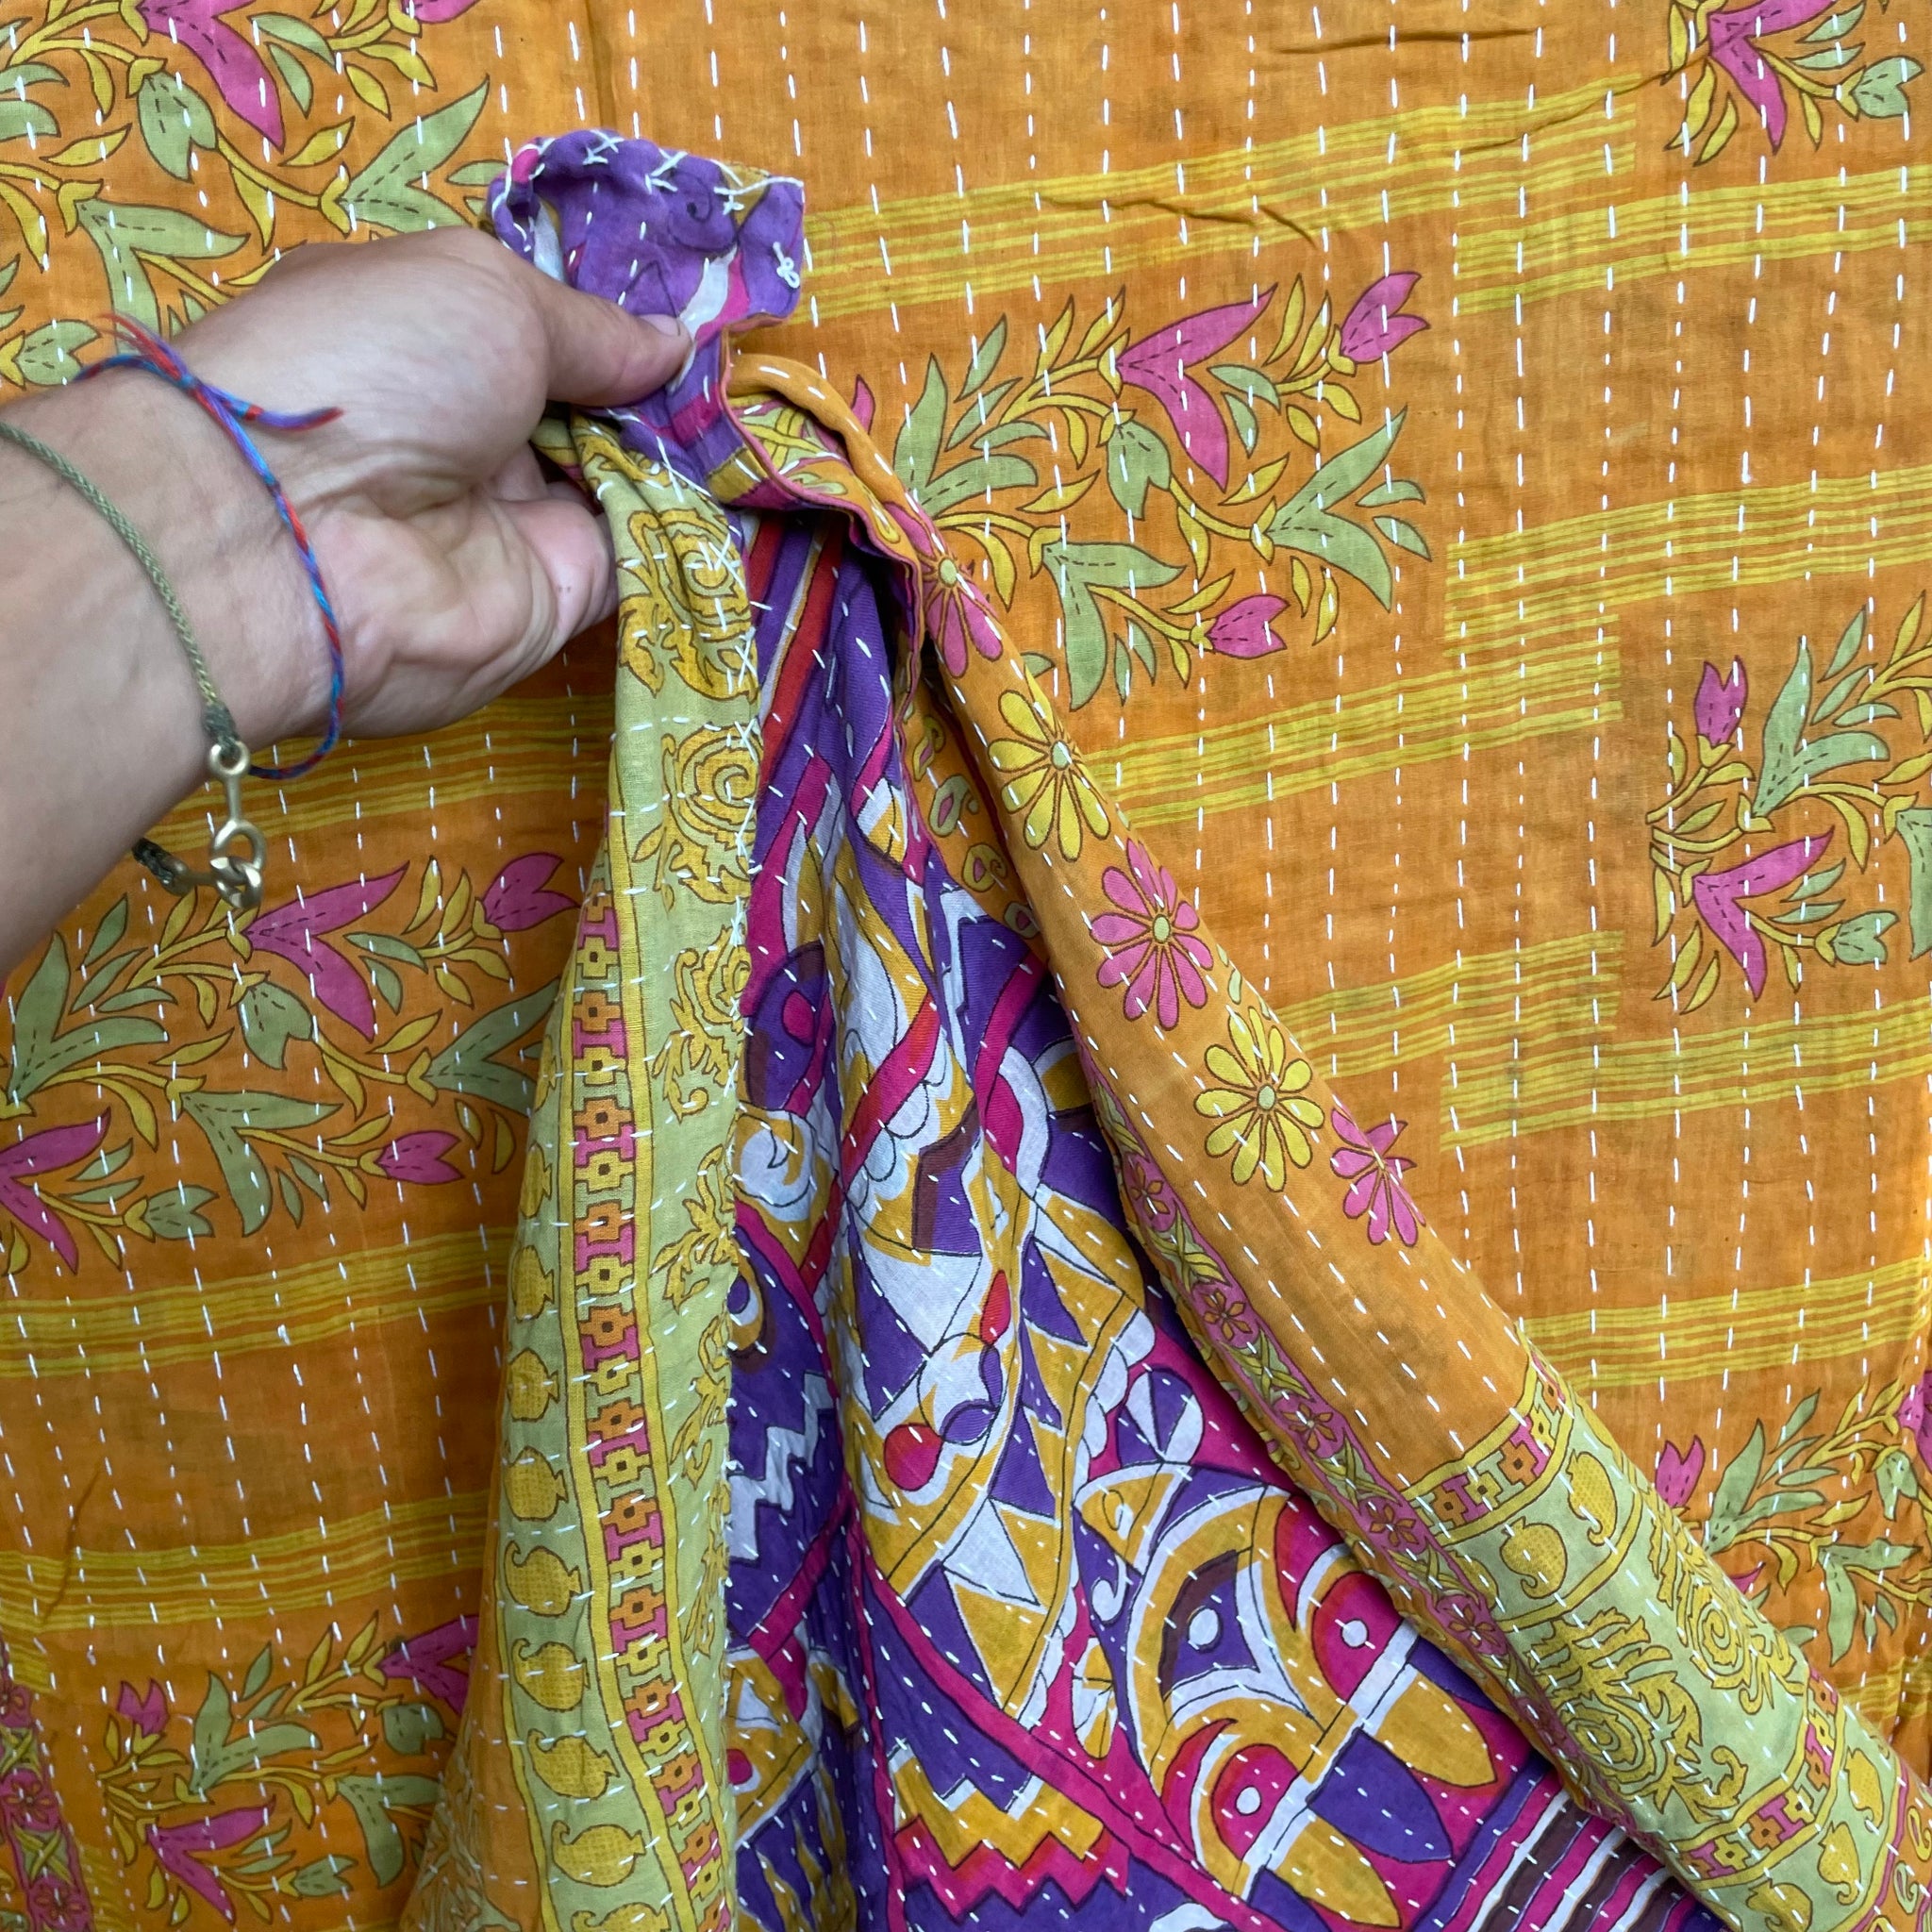 Recycled Sari Kantha Blanket 10